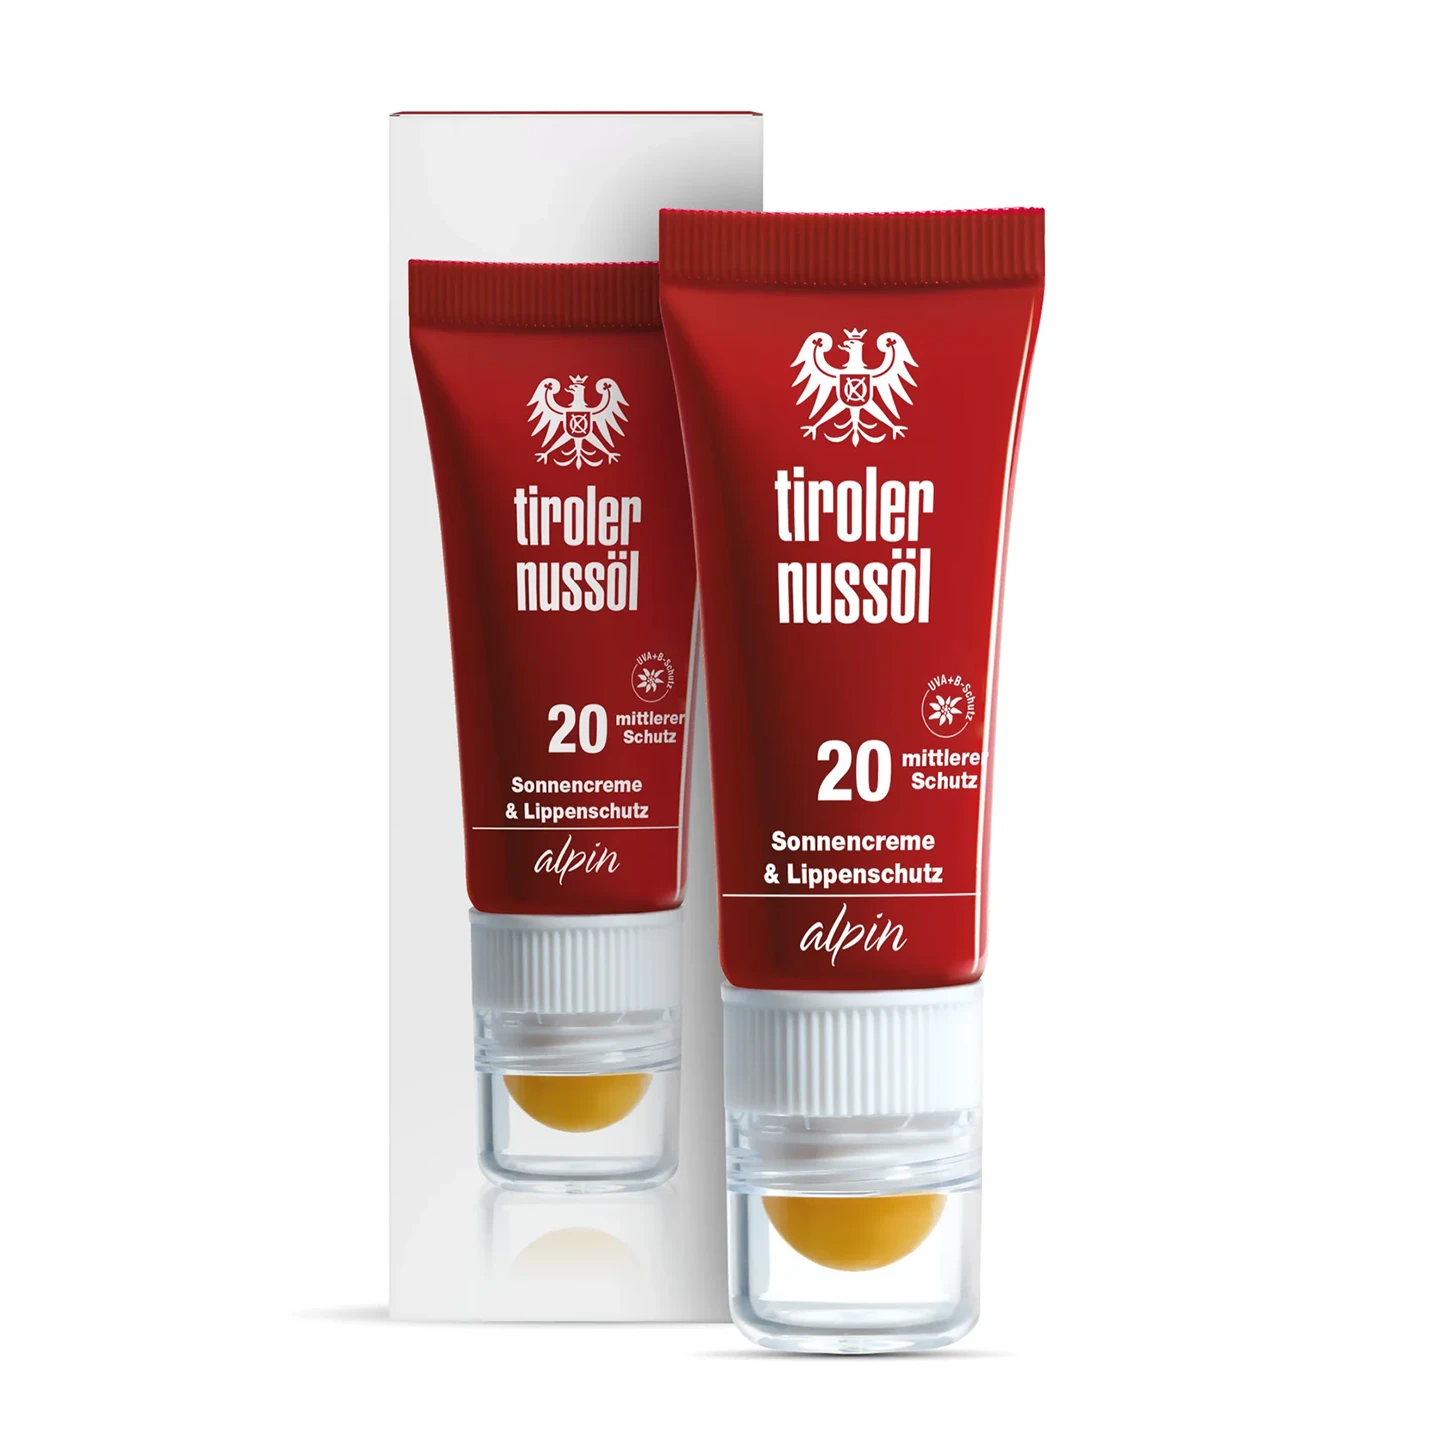 Tiroler Nussöl Alpin Sonnencreme & Lippenschutz Lichtschutzfaktor 20 – Packshot und Verpackung Vorderansicht